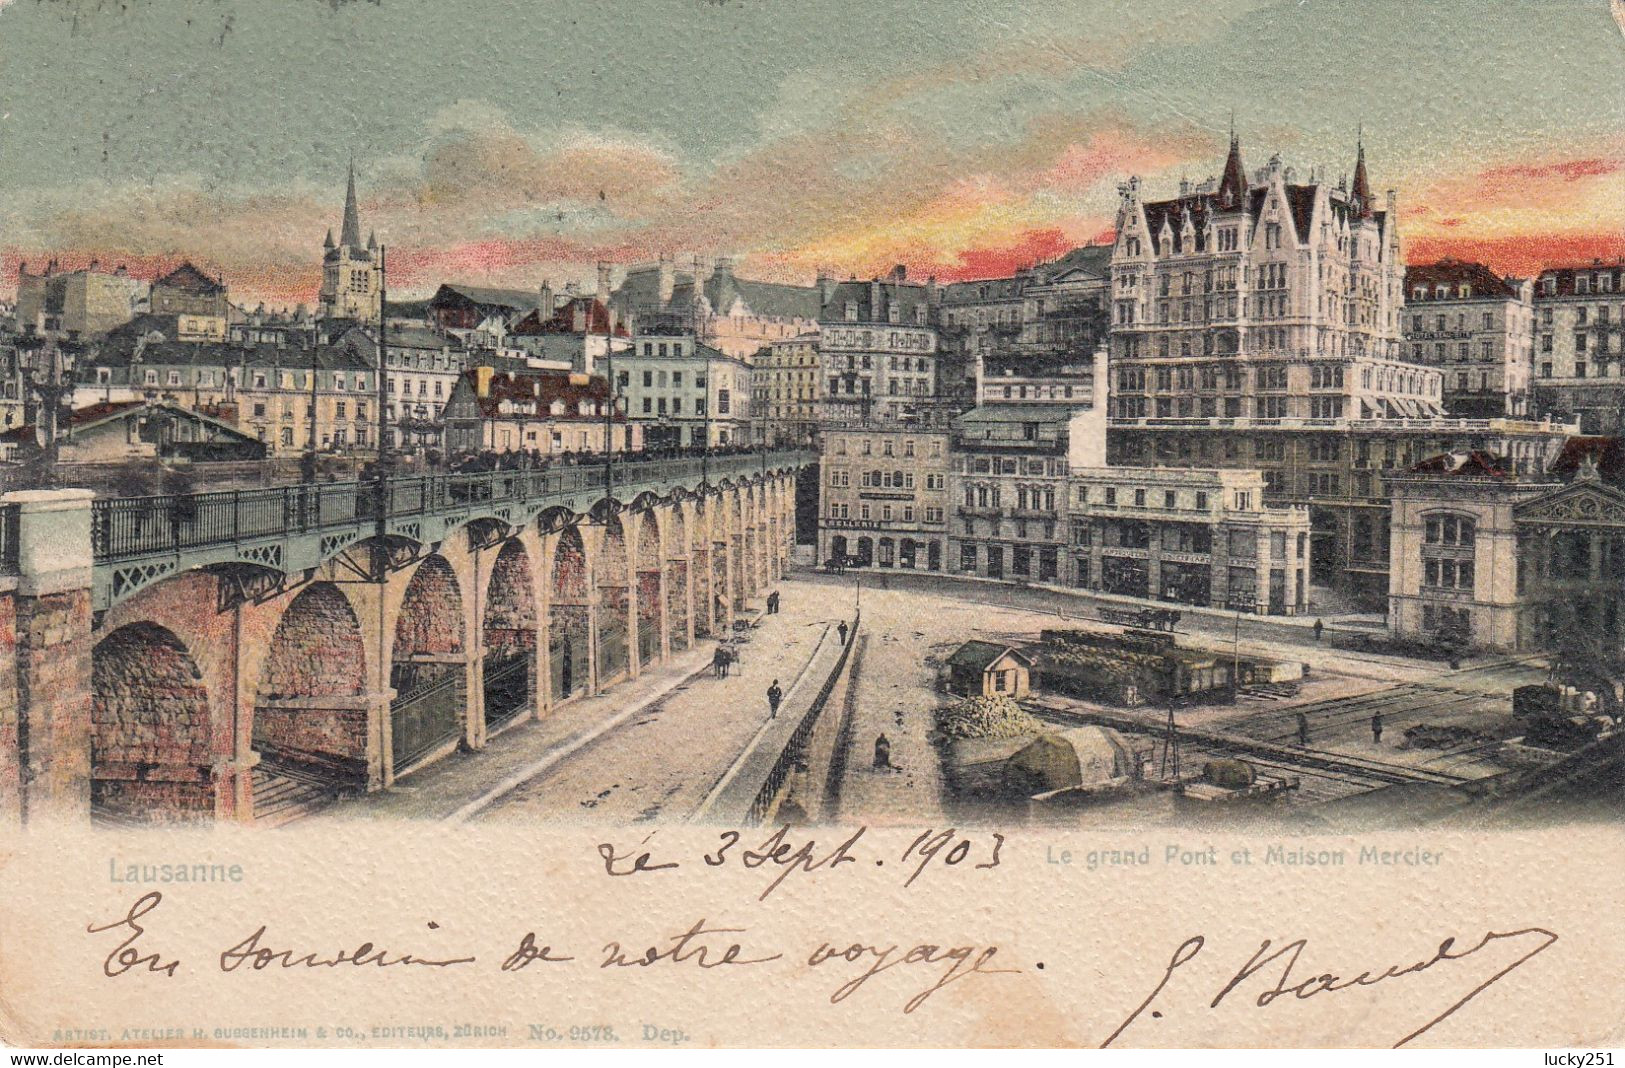 Suisse - Ponts - Lausanne - Le Grand Pont Et Maison Mercier - Circulée Le 03/09/1903 - Ponts